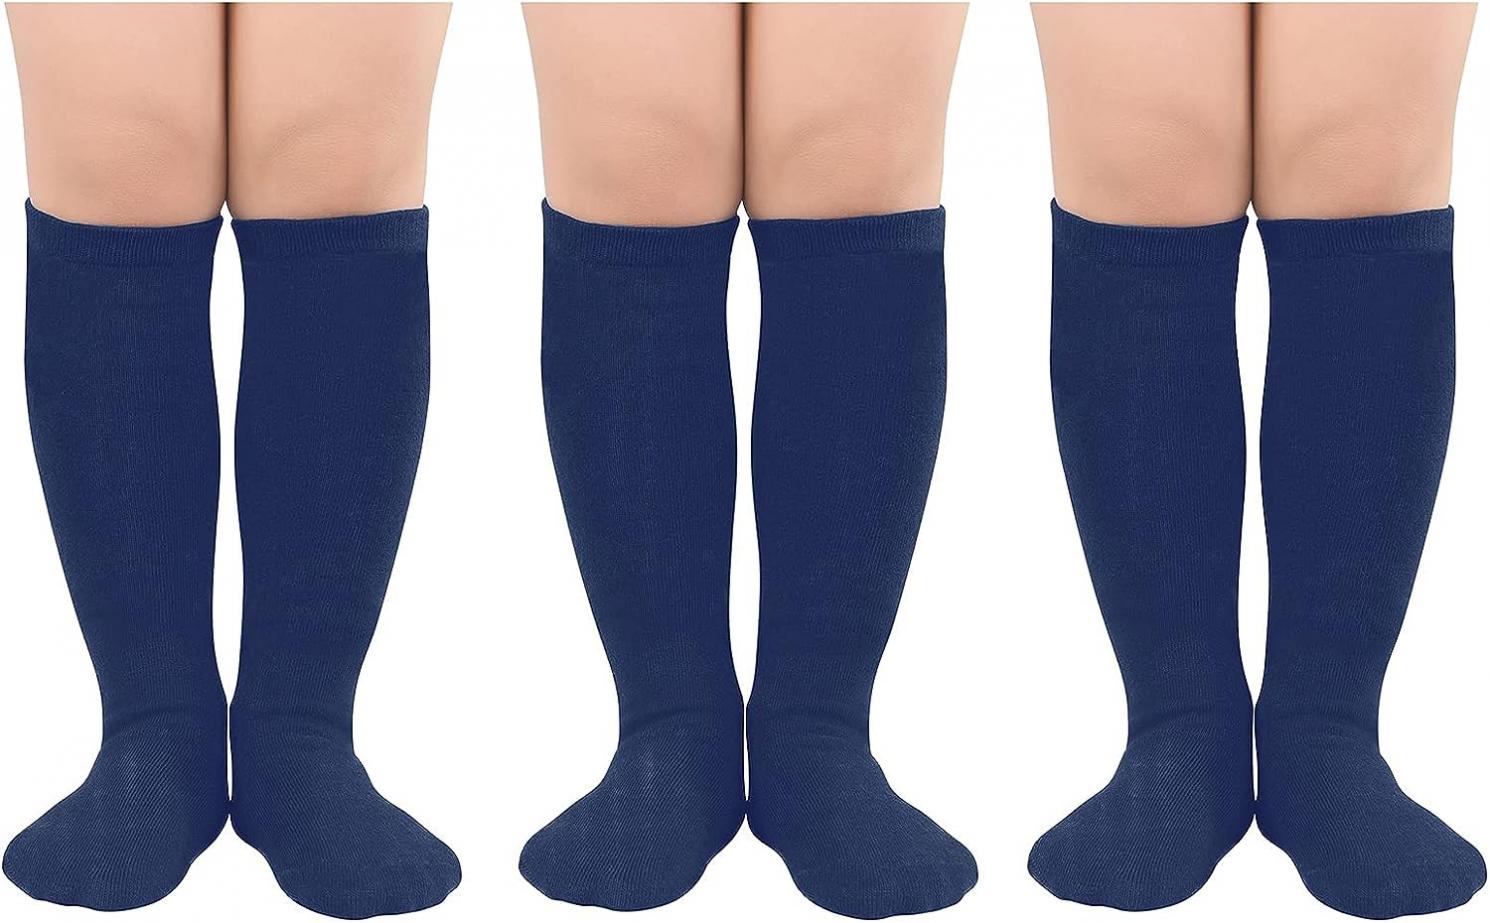 American Trends Kids Child Athletic Socks Striped Knee High Tube Soccer Socks Baseball Softball Socks for Toddler Girls Boys